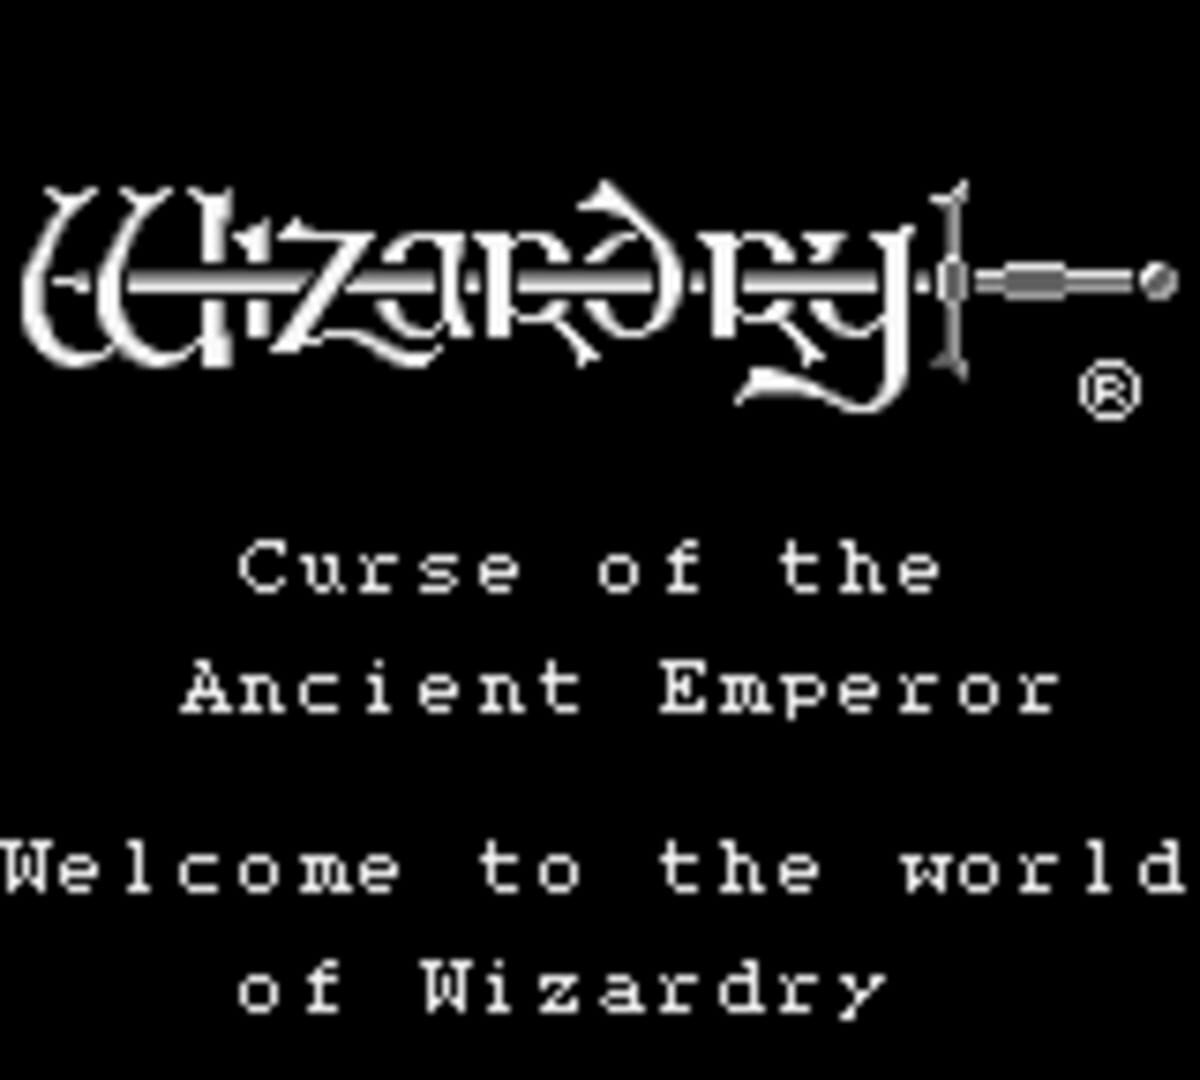 Captura de pantalla - Wizardry Gaiden II: Curse of the Ancient Emperor